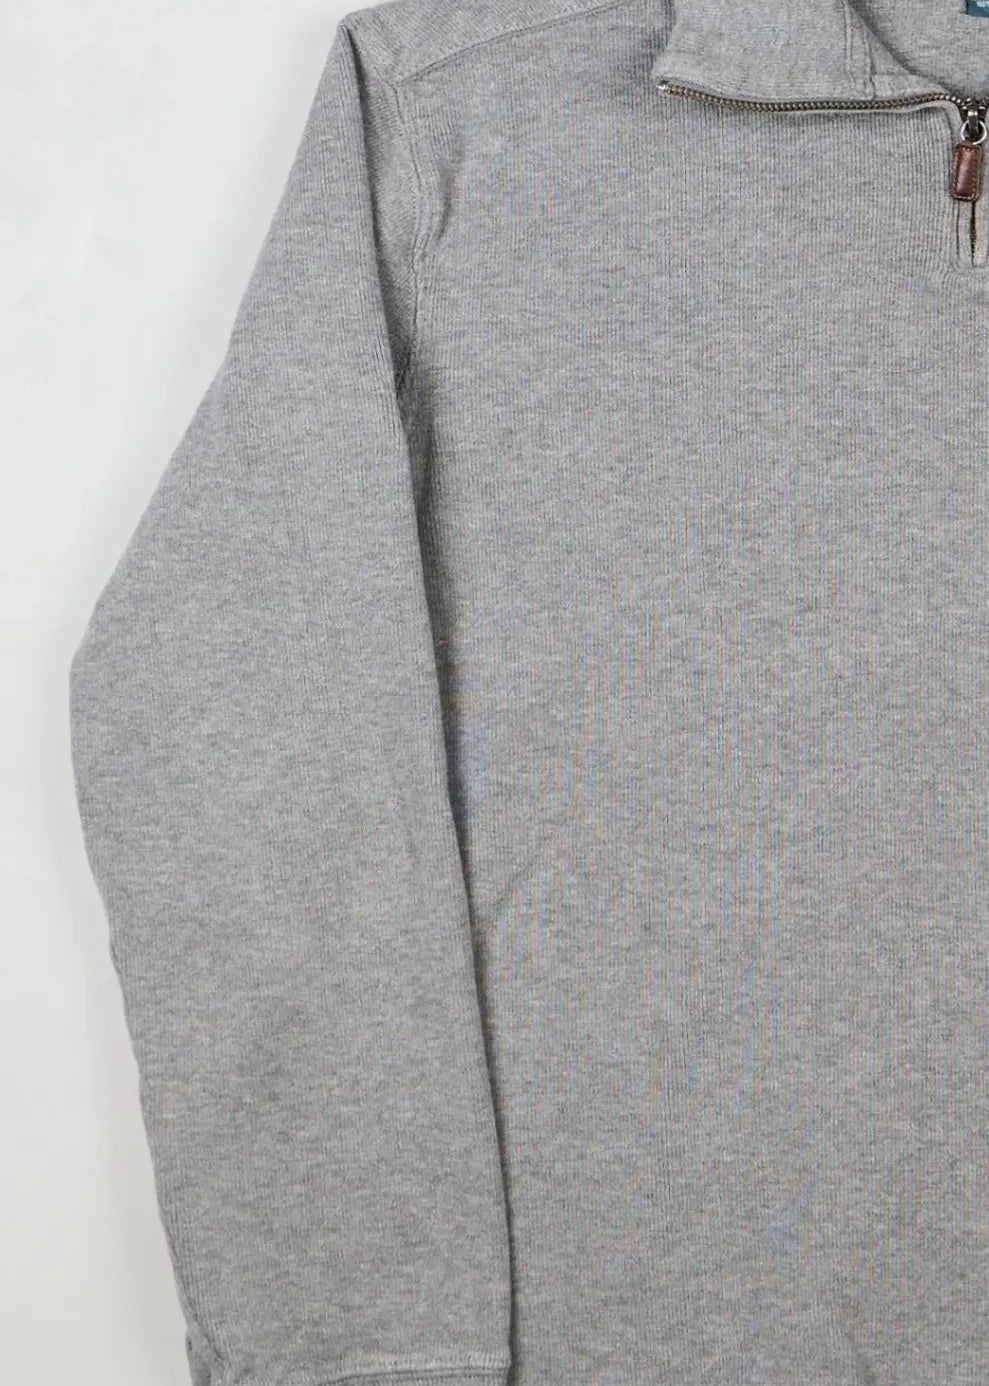 Ralph Lauren - Sweater (M) Left